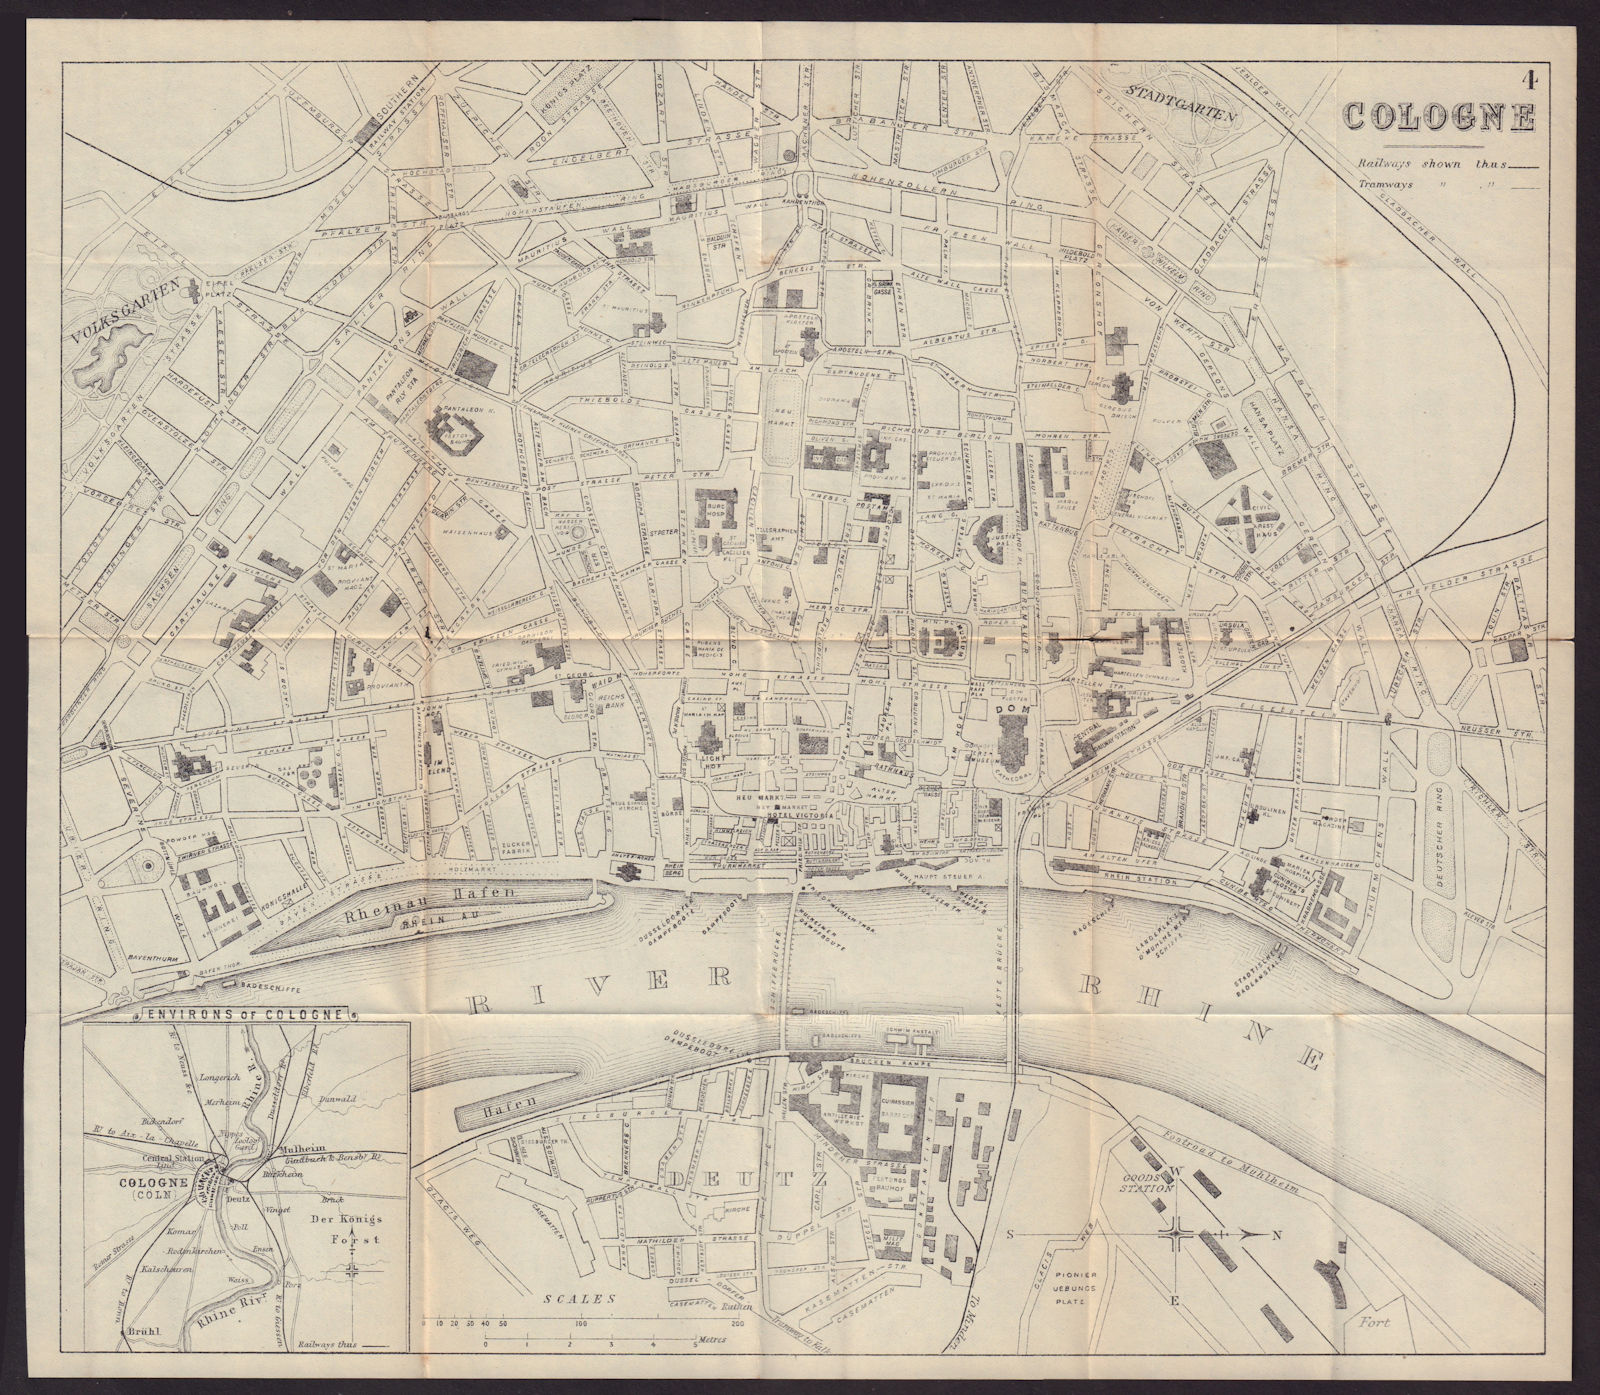 COLOGNE KOLN KÖLN antique town plan city map. Germany. BRADSHAW 1893 old